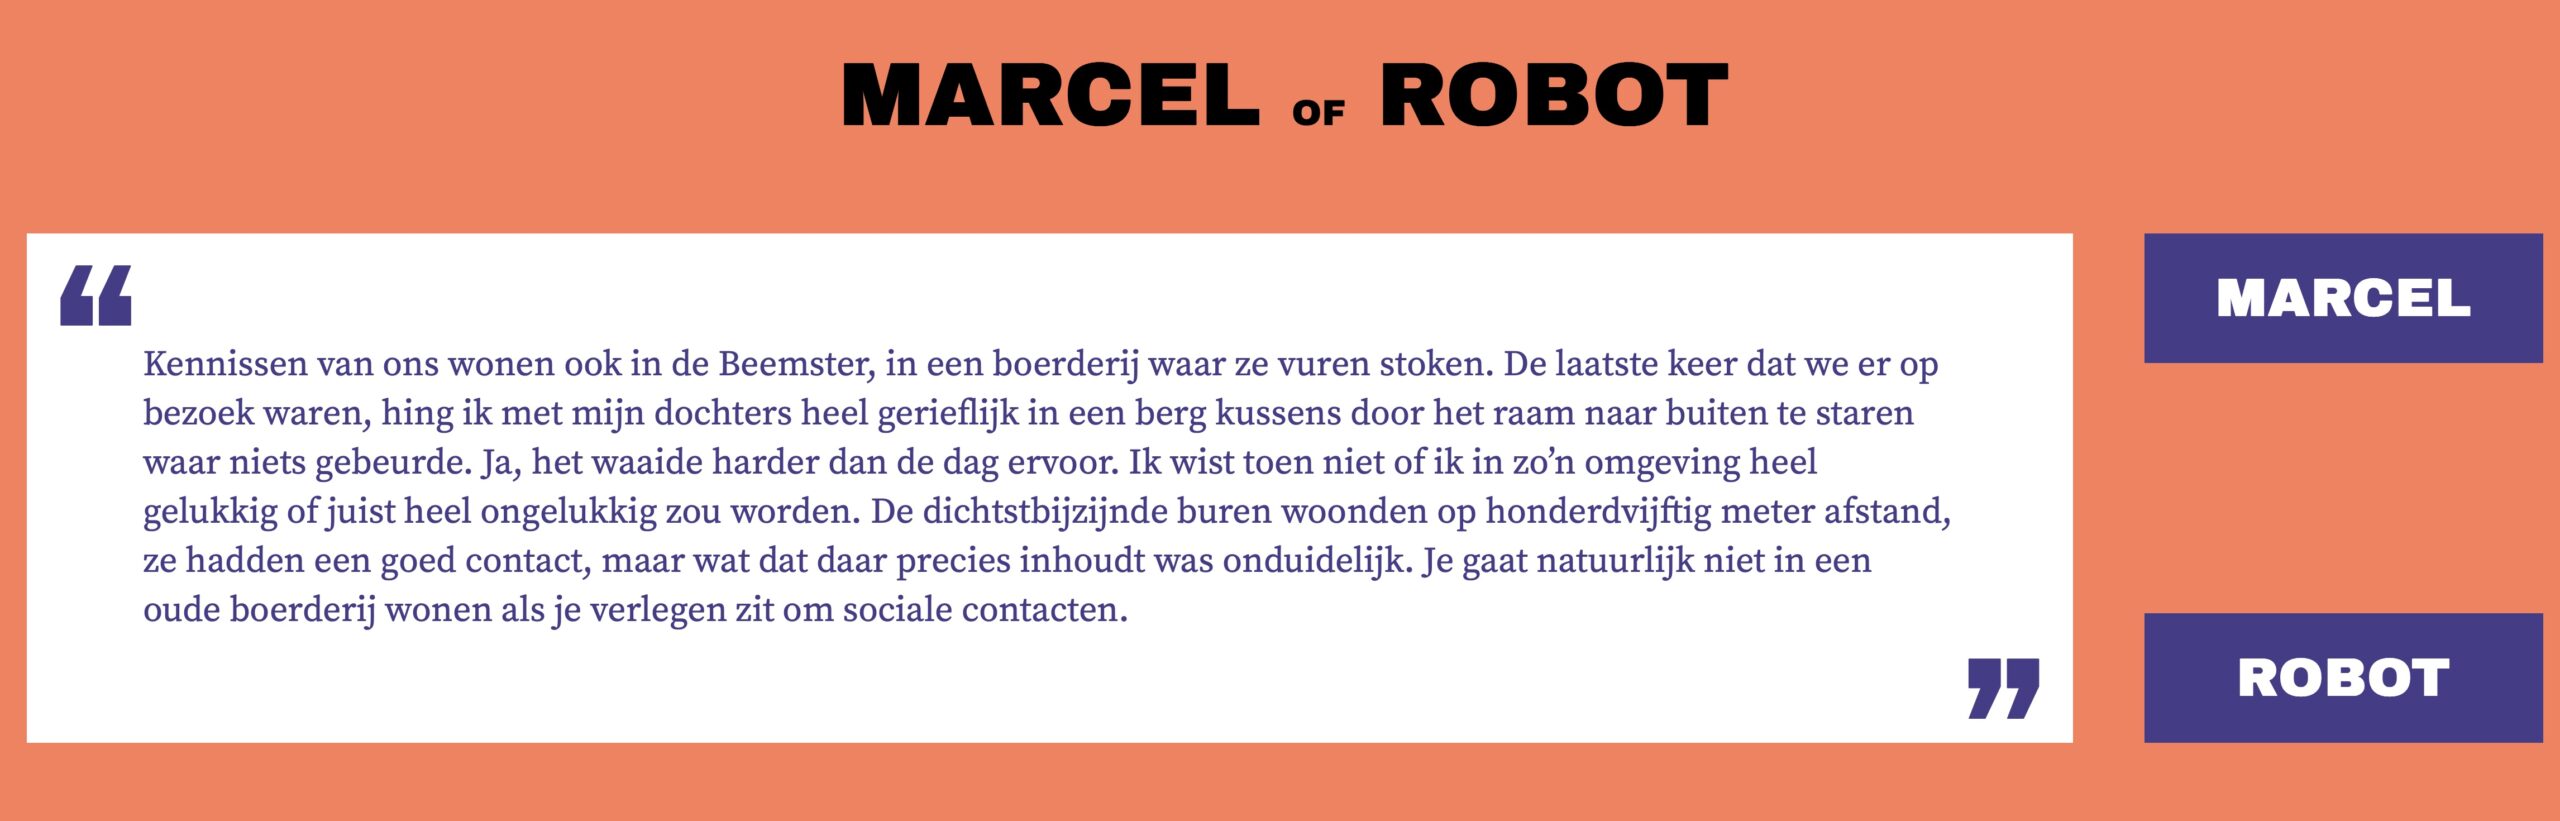 marcel of robot screenshot van de gelijknamige vergelijksite